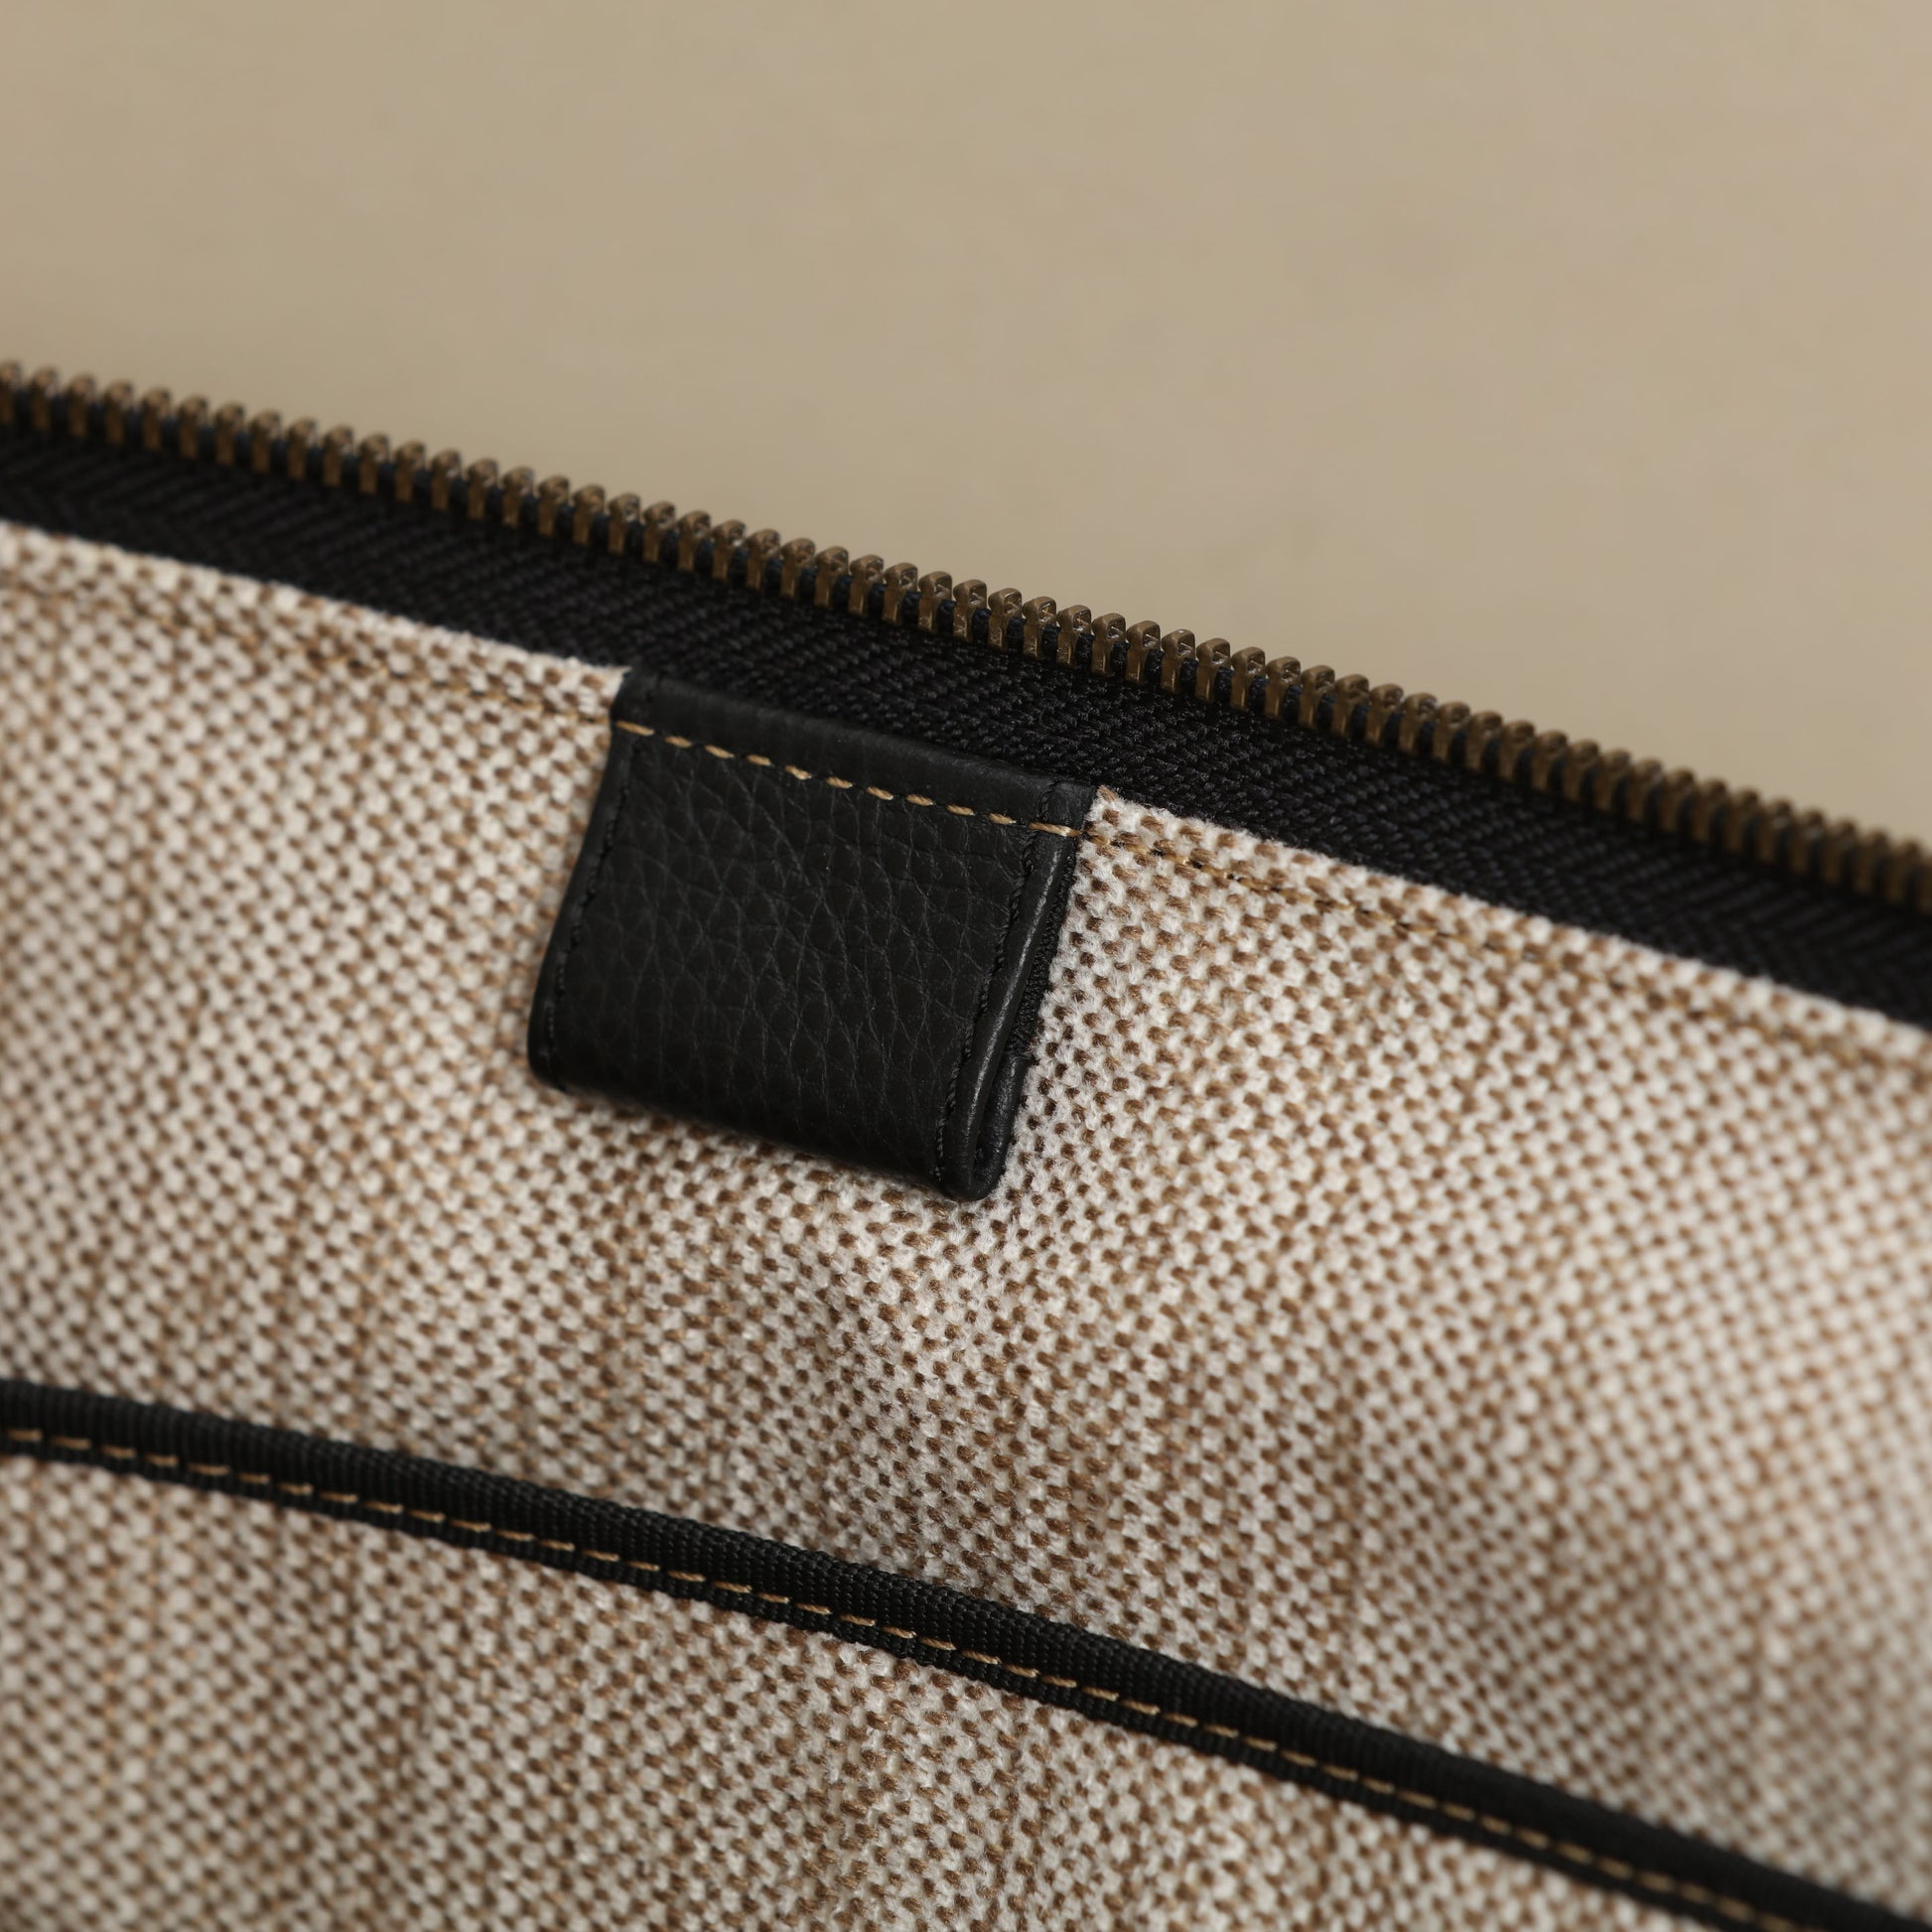 iPad mini zipp case / Leather iPad mini folio / Handmade leather mini –  Luscious Leather NYC